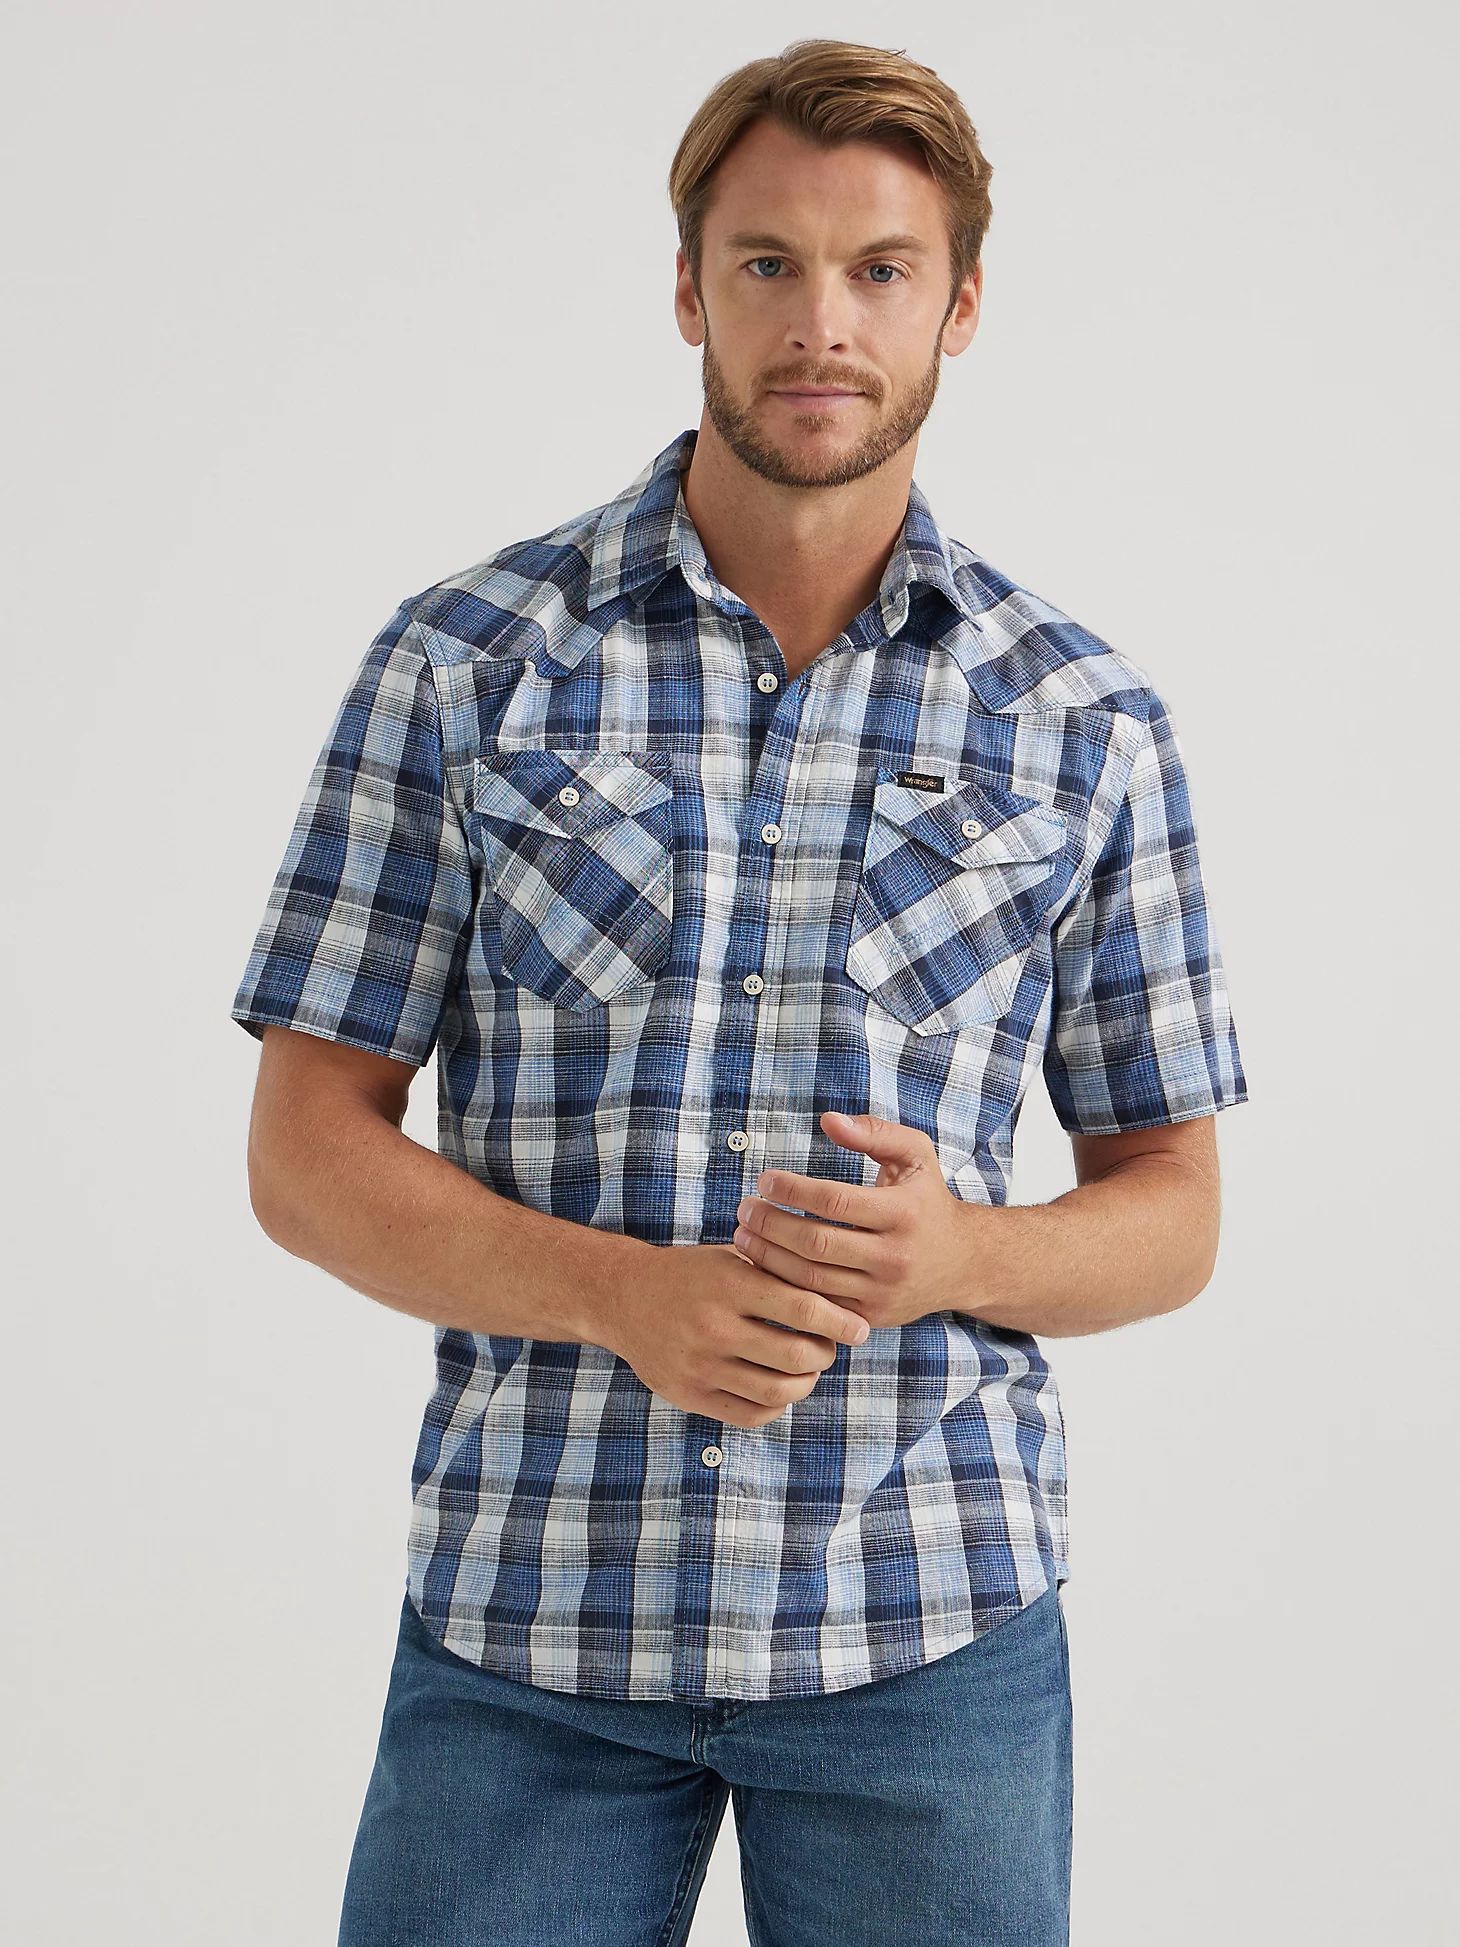 Men's Short Sleeve Plaid Shirt in Bright Colbalt | Wrangler